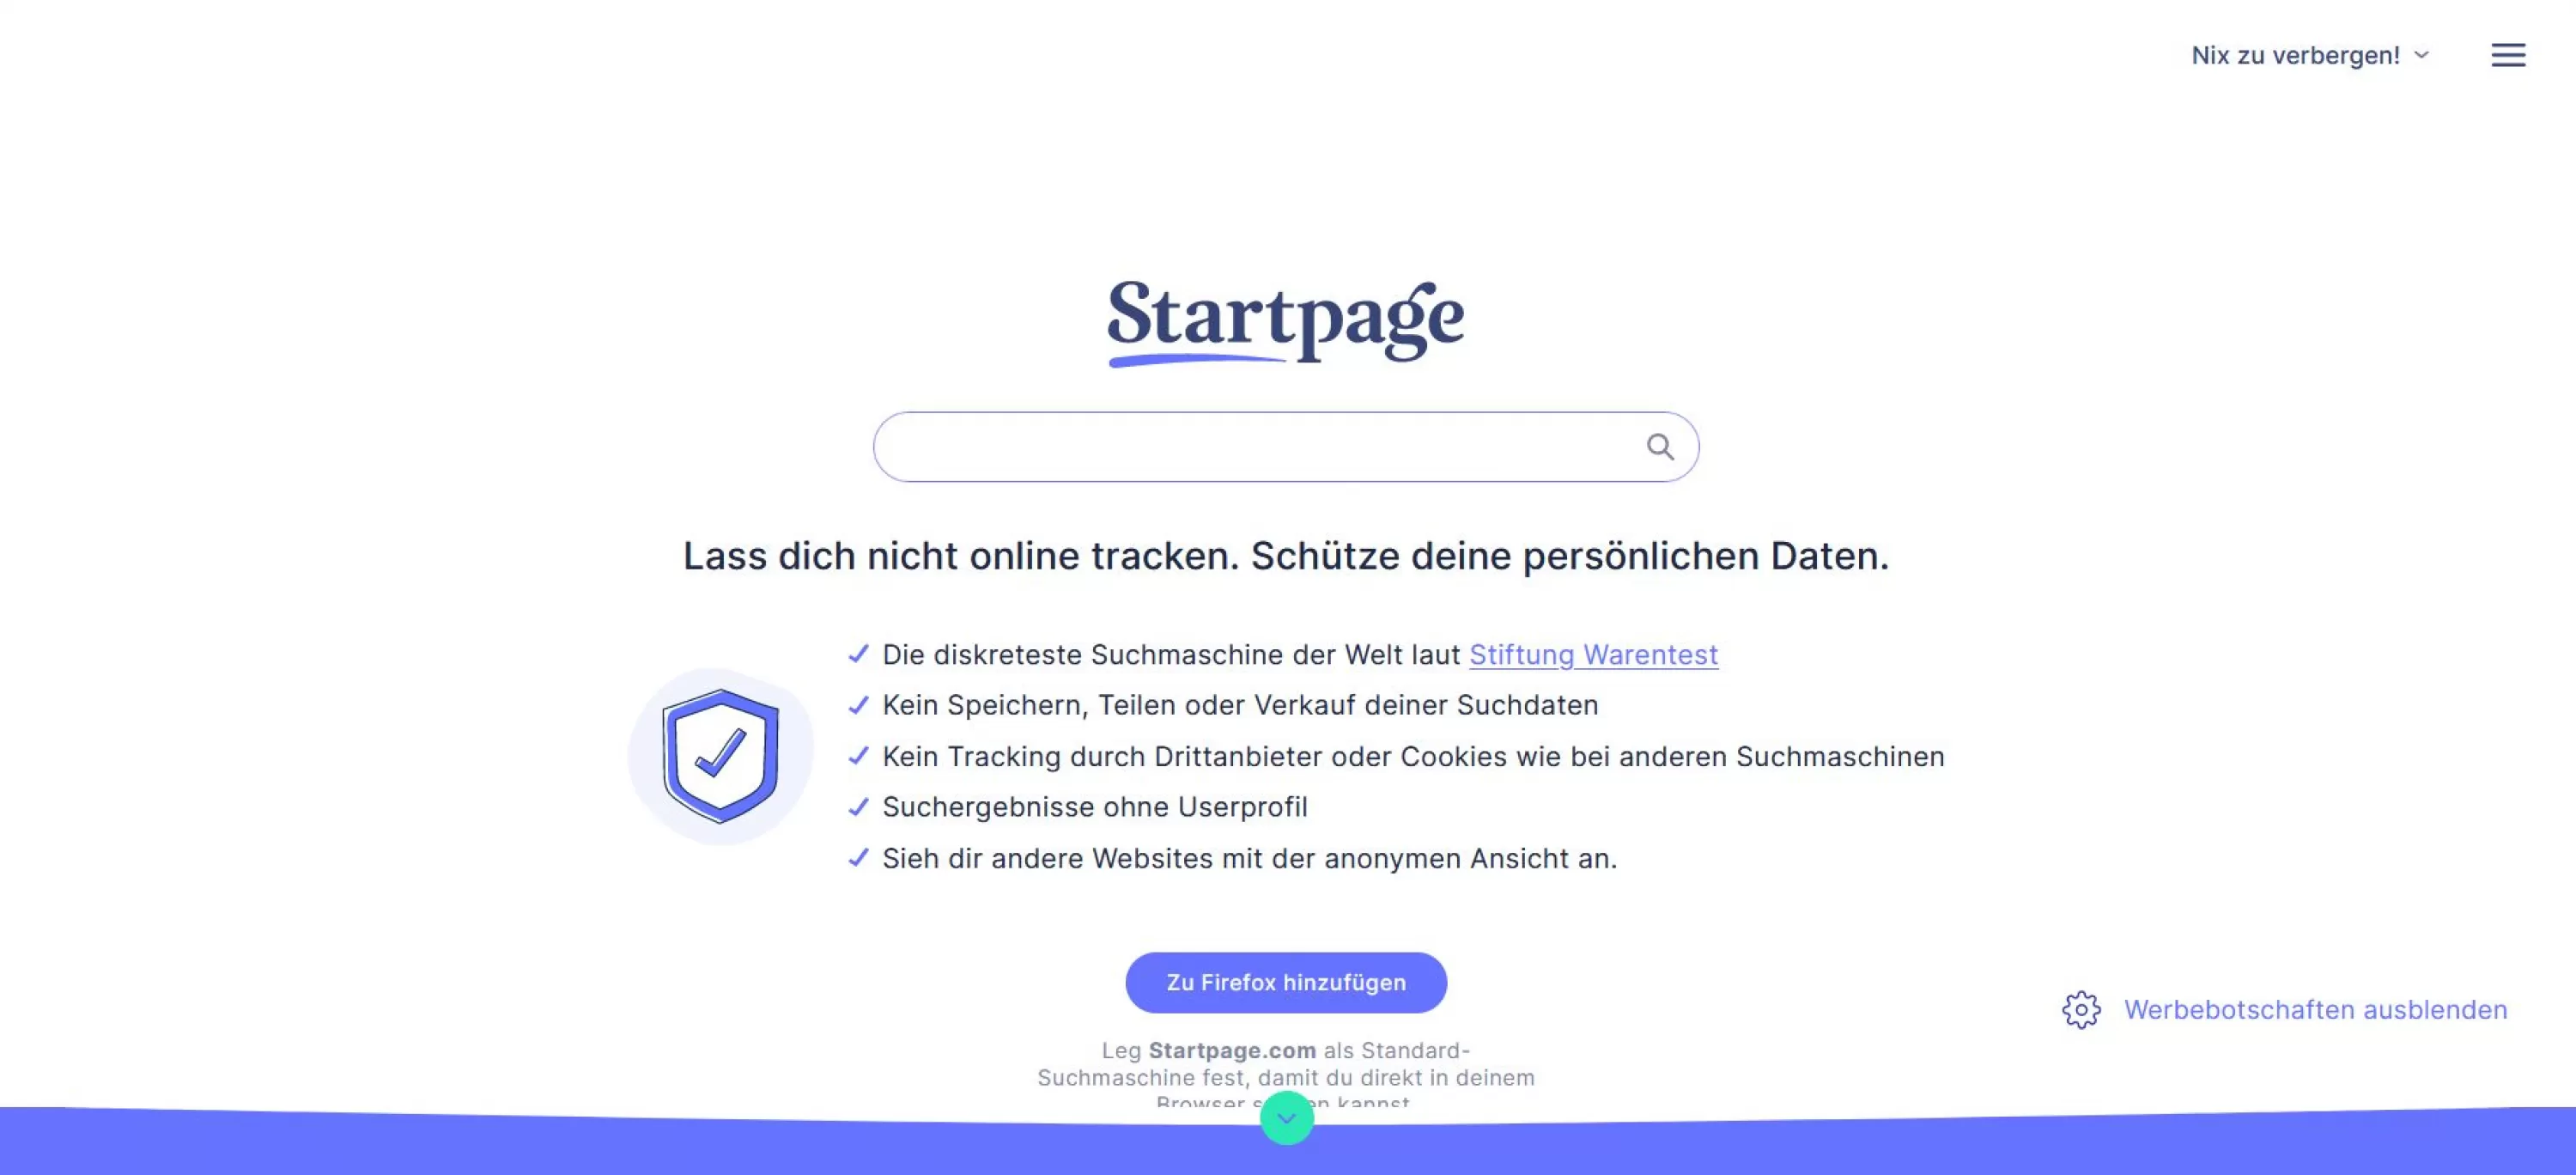 Oberfläche von Startpage.com